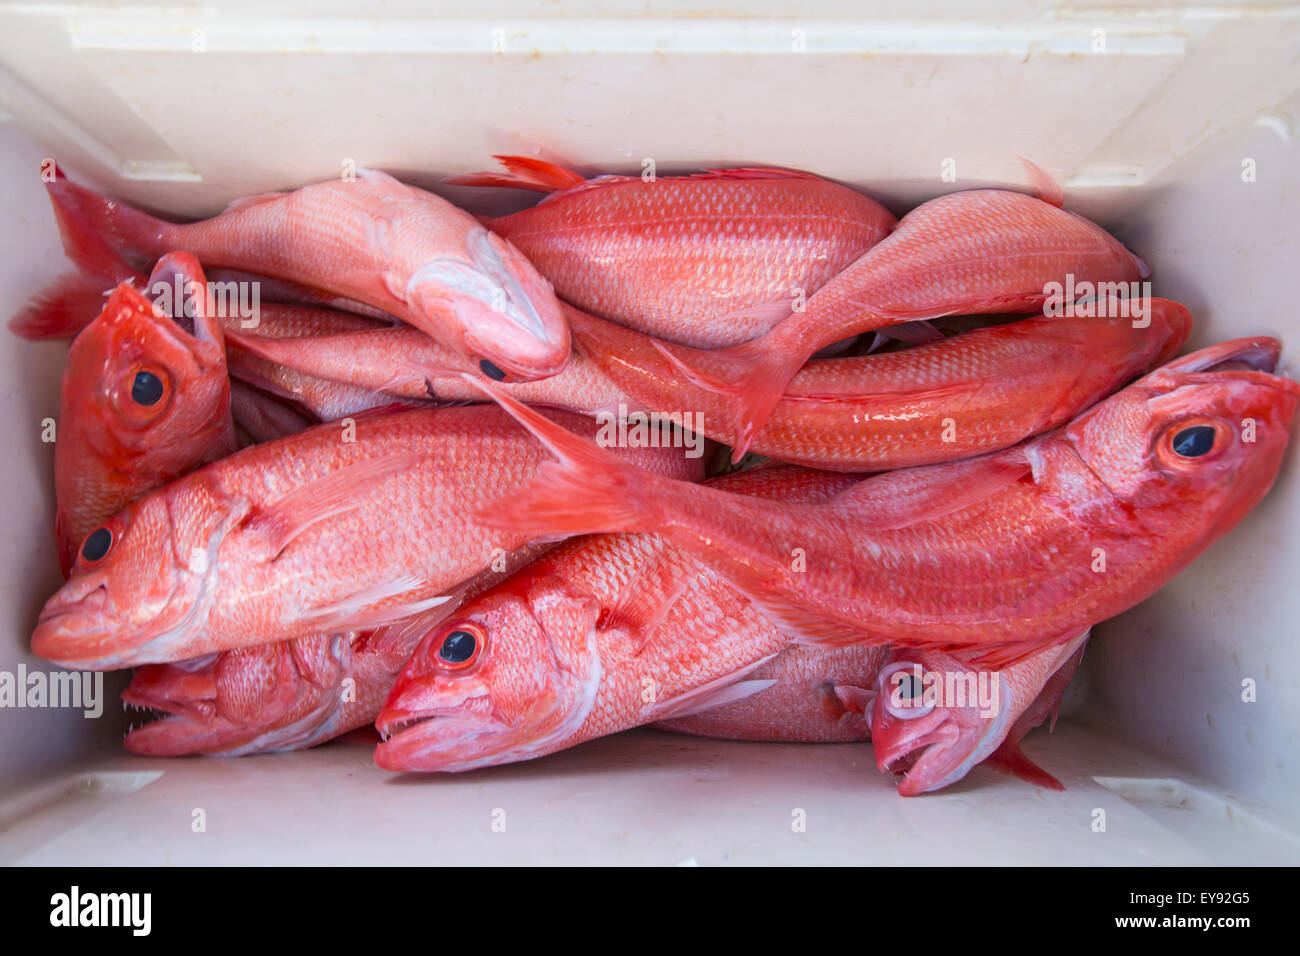 Pescato fresco pesce rosa in un refrigeratore; Tahiti Foto stock - Alamy